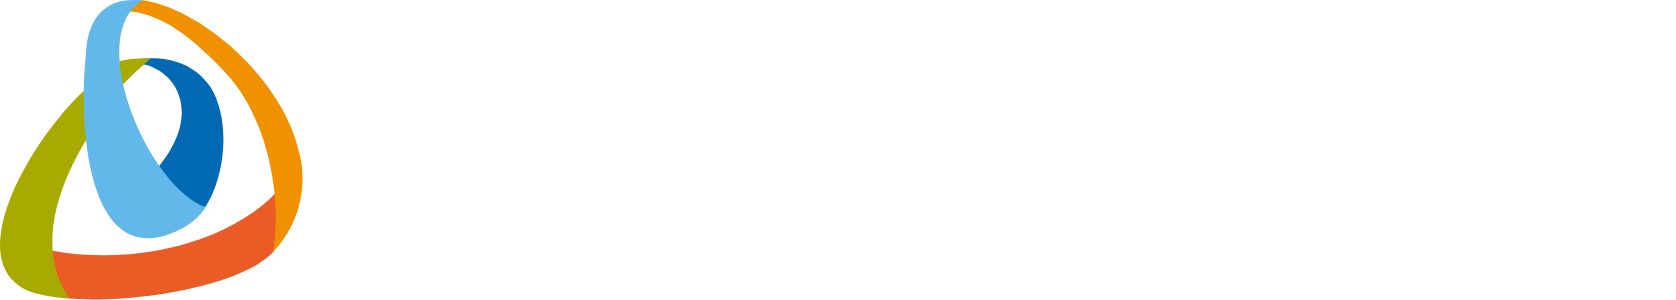 Grid Dynamics logo large for dark backgrounds (transparent PNG)